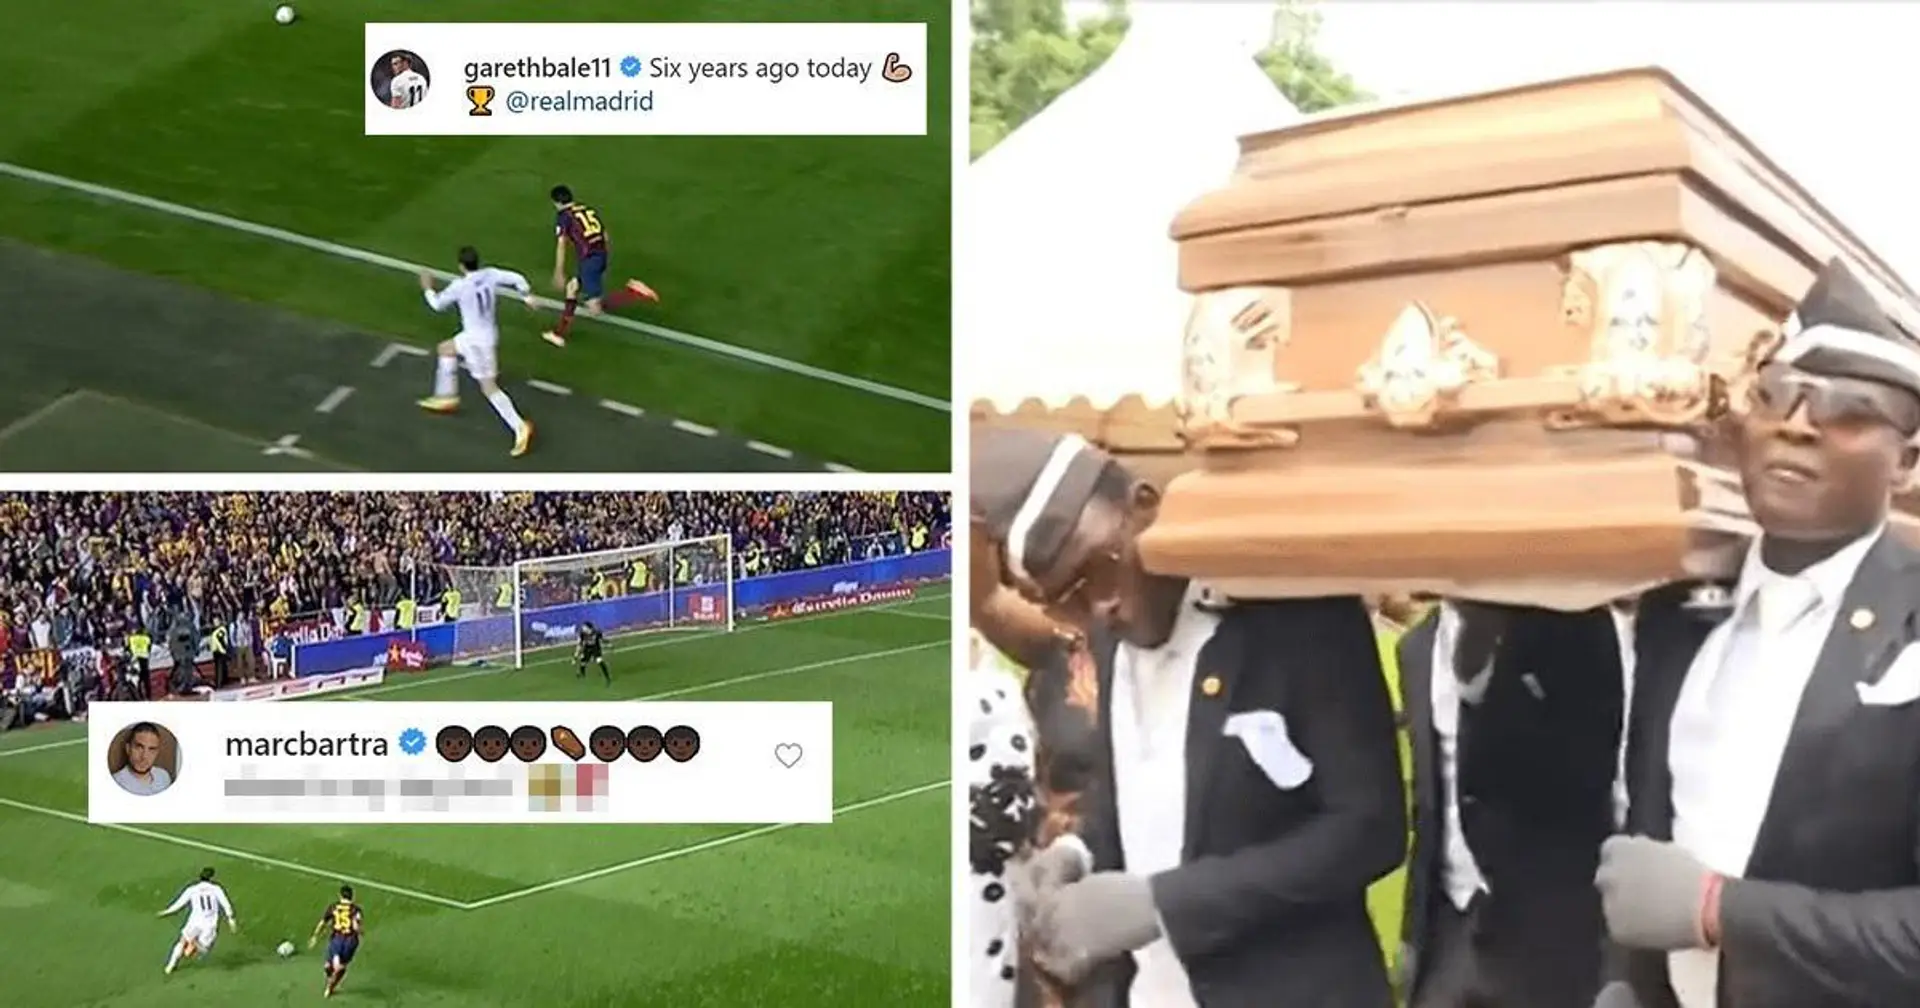 Marc Bartra détourne la célébration Instagram de Gareth Bale avec un drôle de message